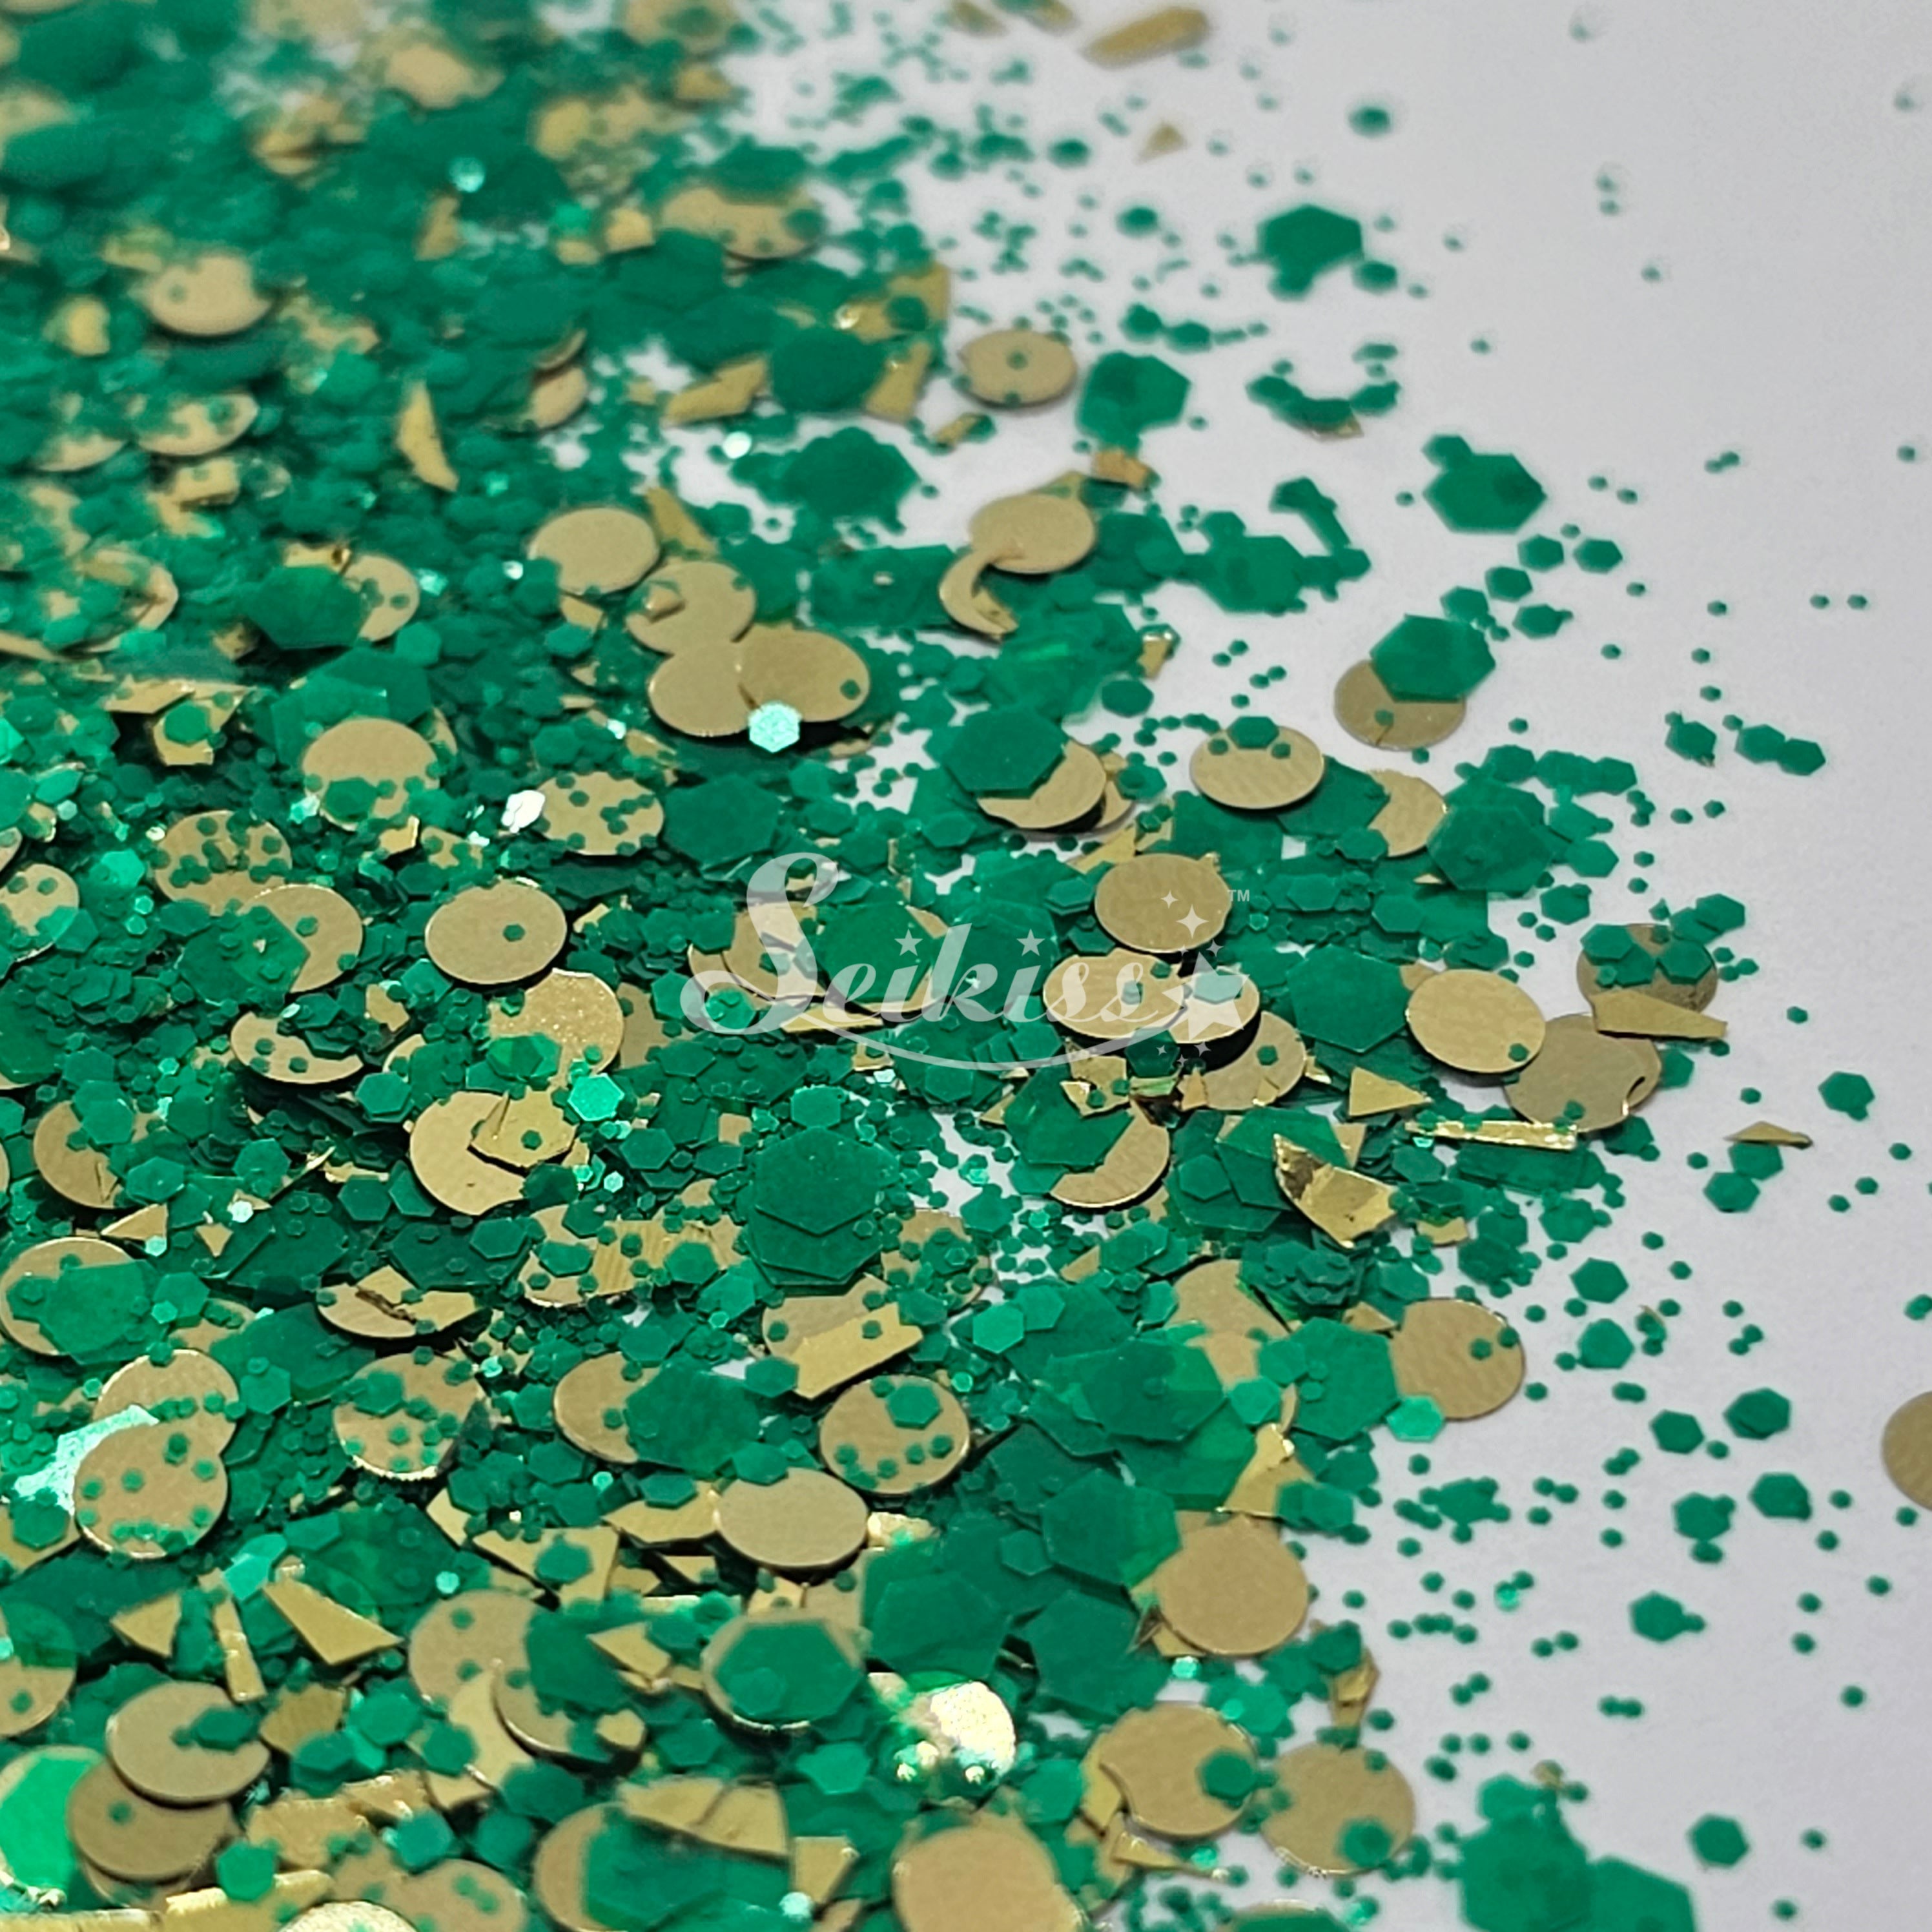 Brazilian Emerald Chunky Glitter - Multicolor Glitter